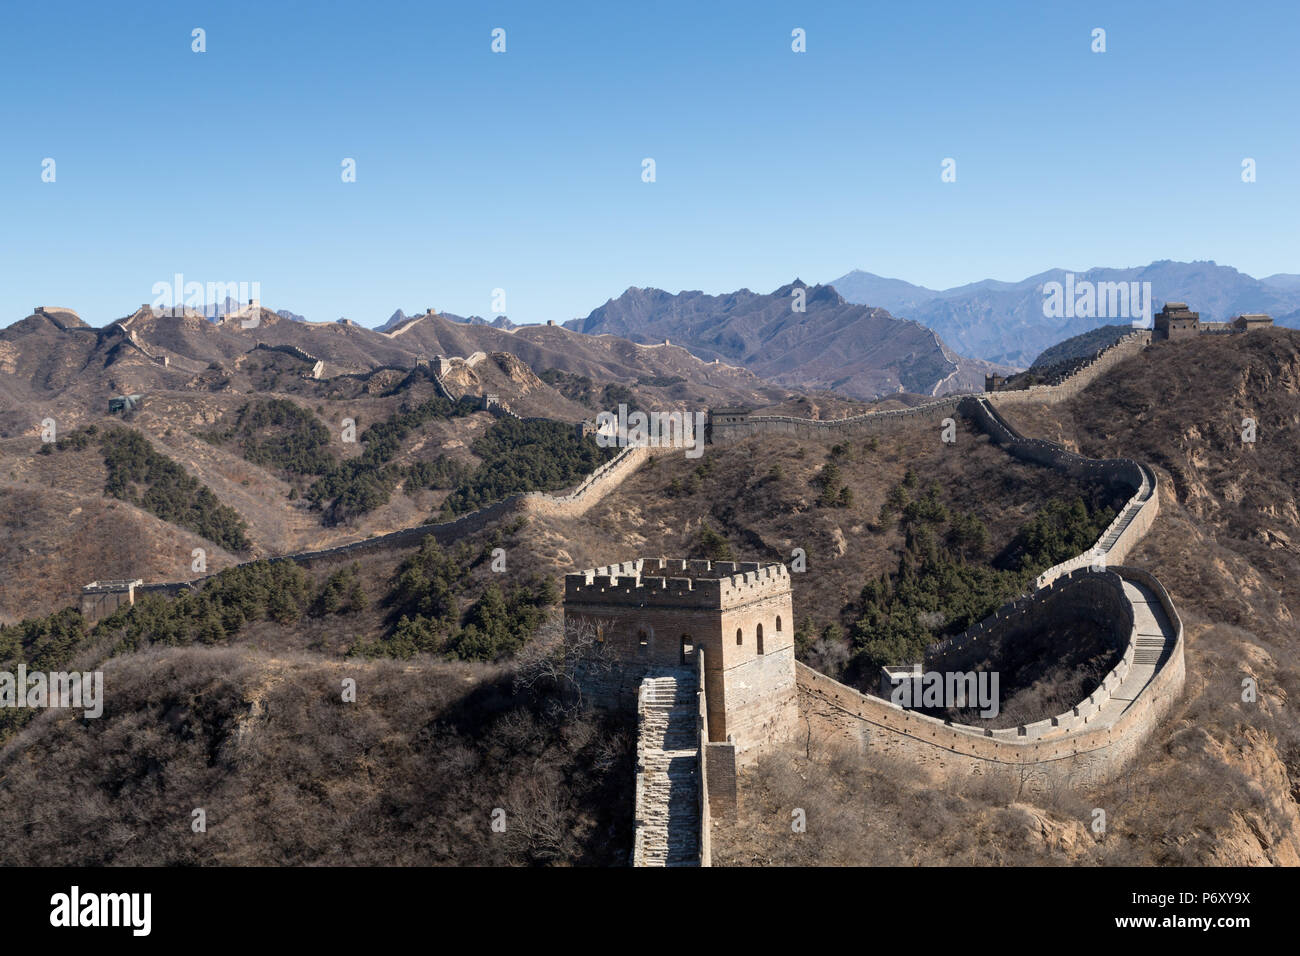 The Great Wall at Jinshanling, 130 km from Beijing, China. Stock Photo